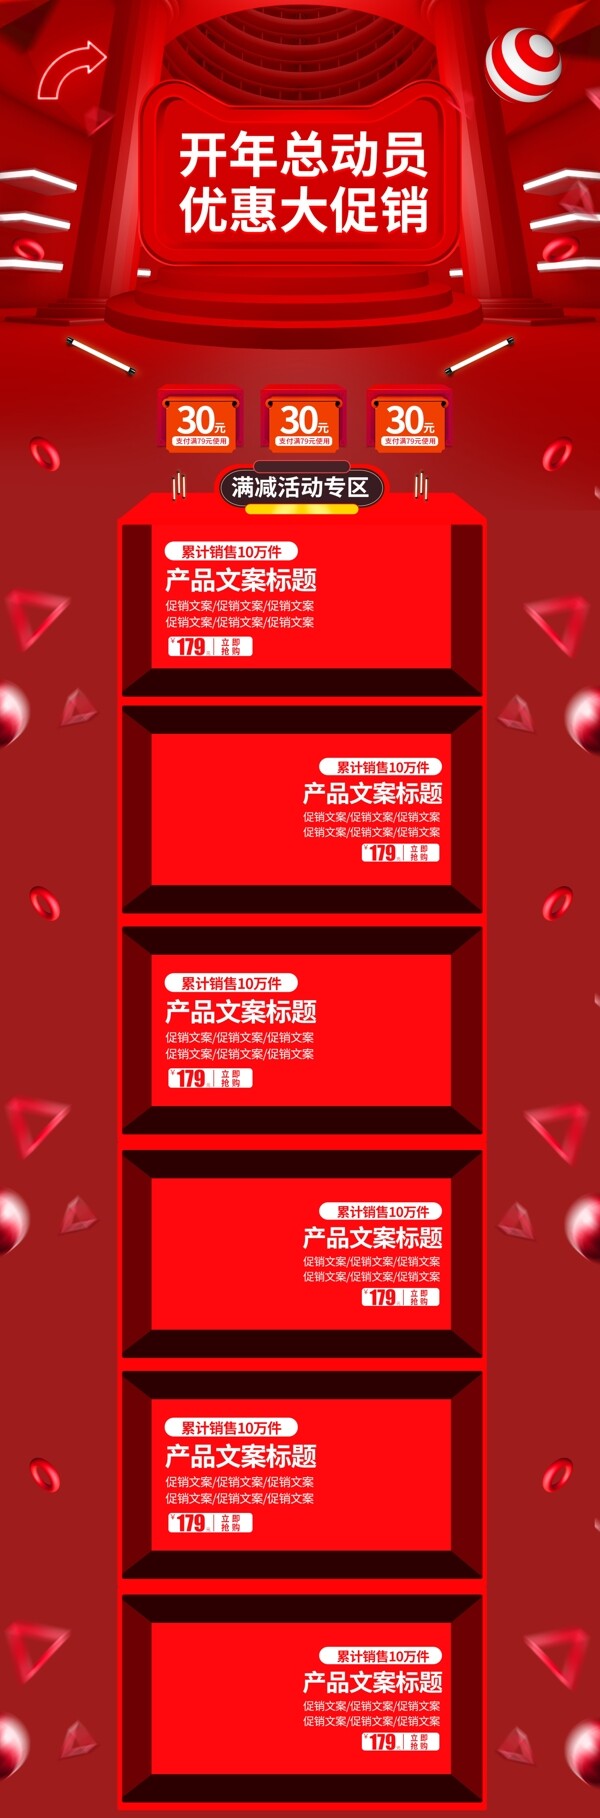 红色炫酷微立体开年总动员活动促销电商首页